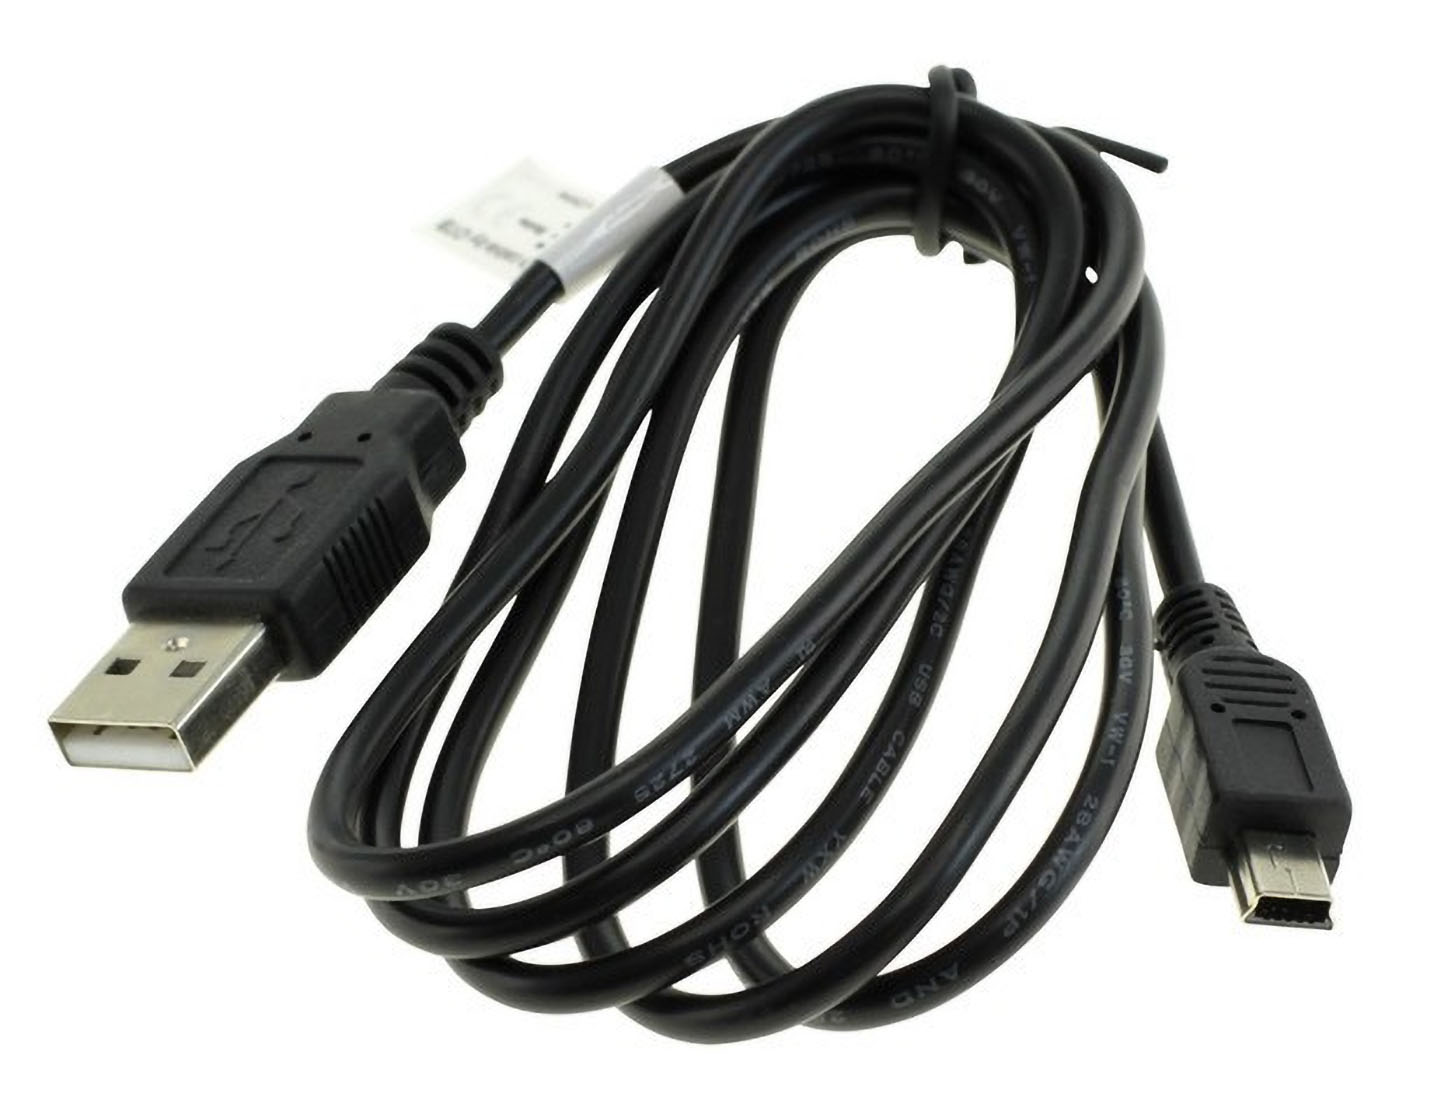 mit sonstige kompatibel schwarz Medion, Life USB-Datenkabel E44050 MOBILOTEC Kabel Medion